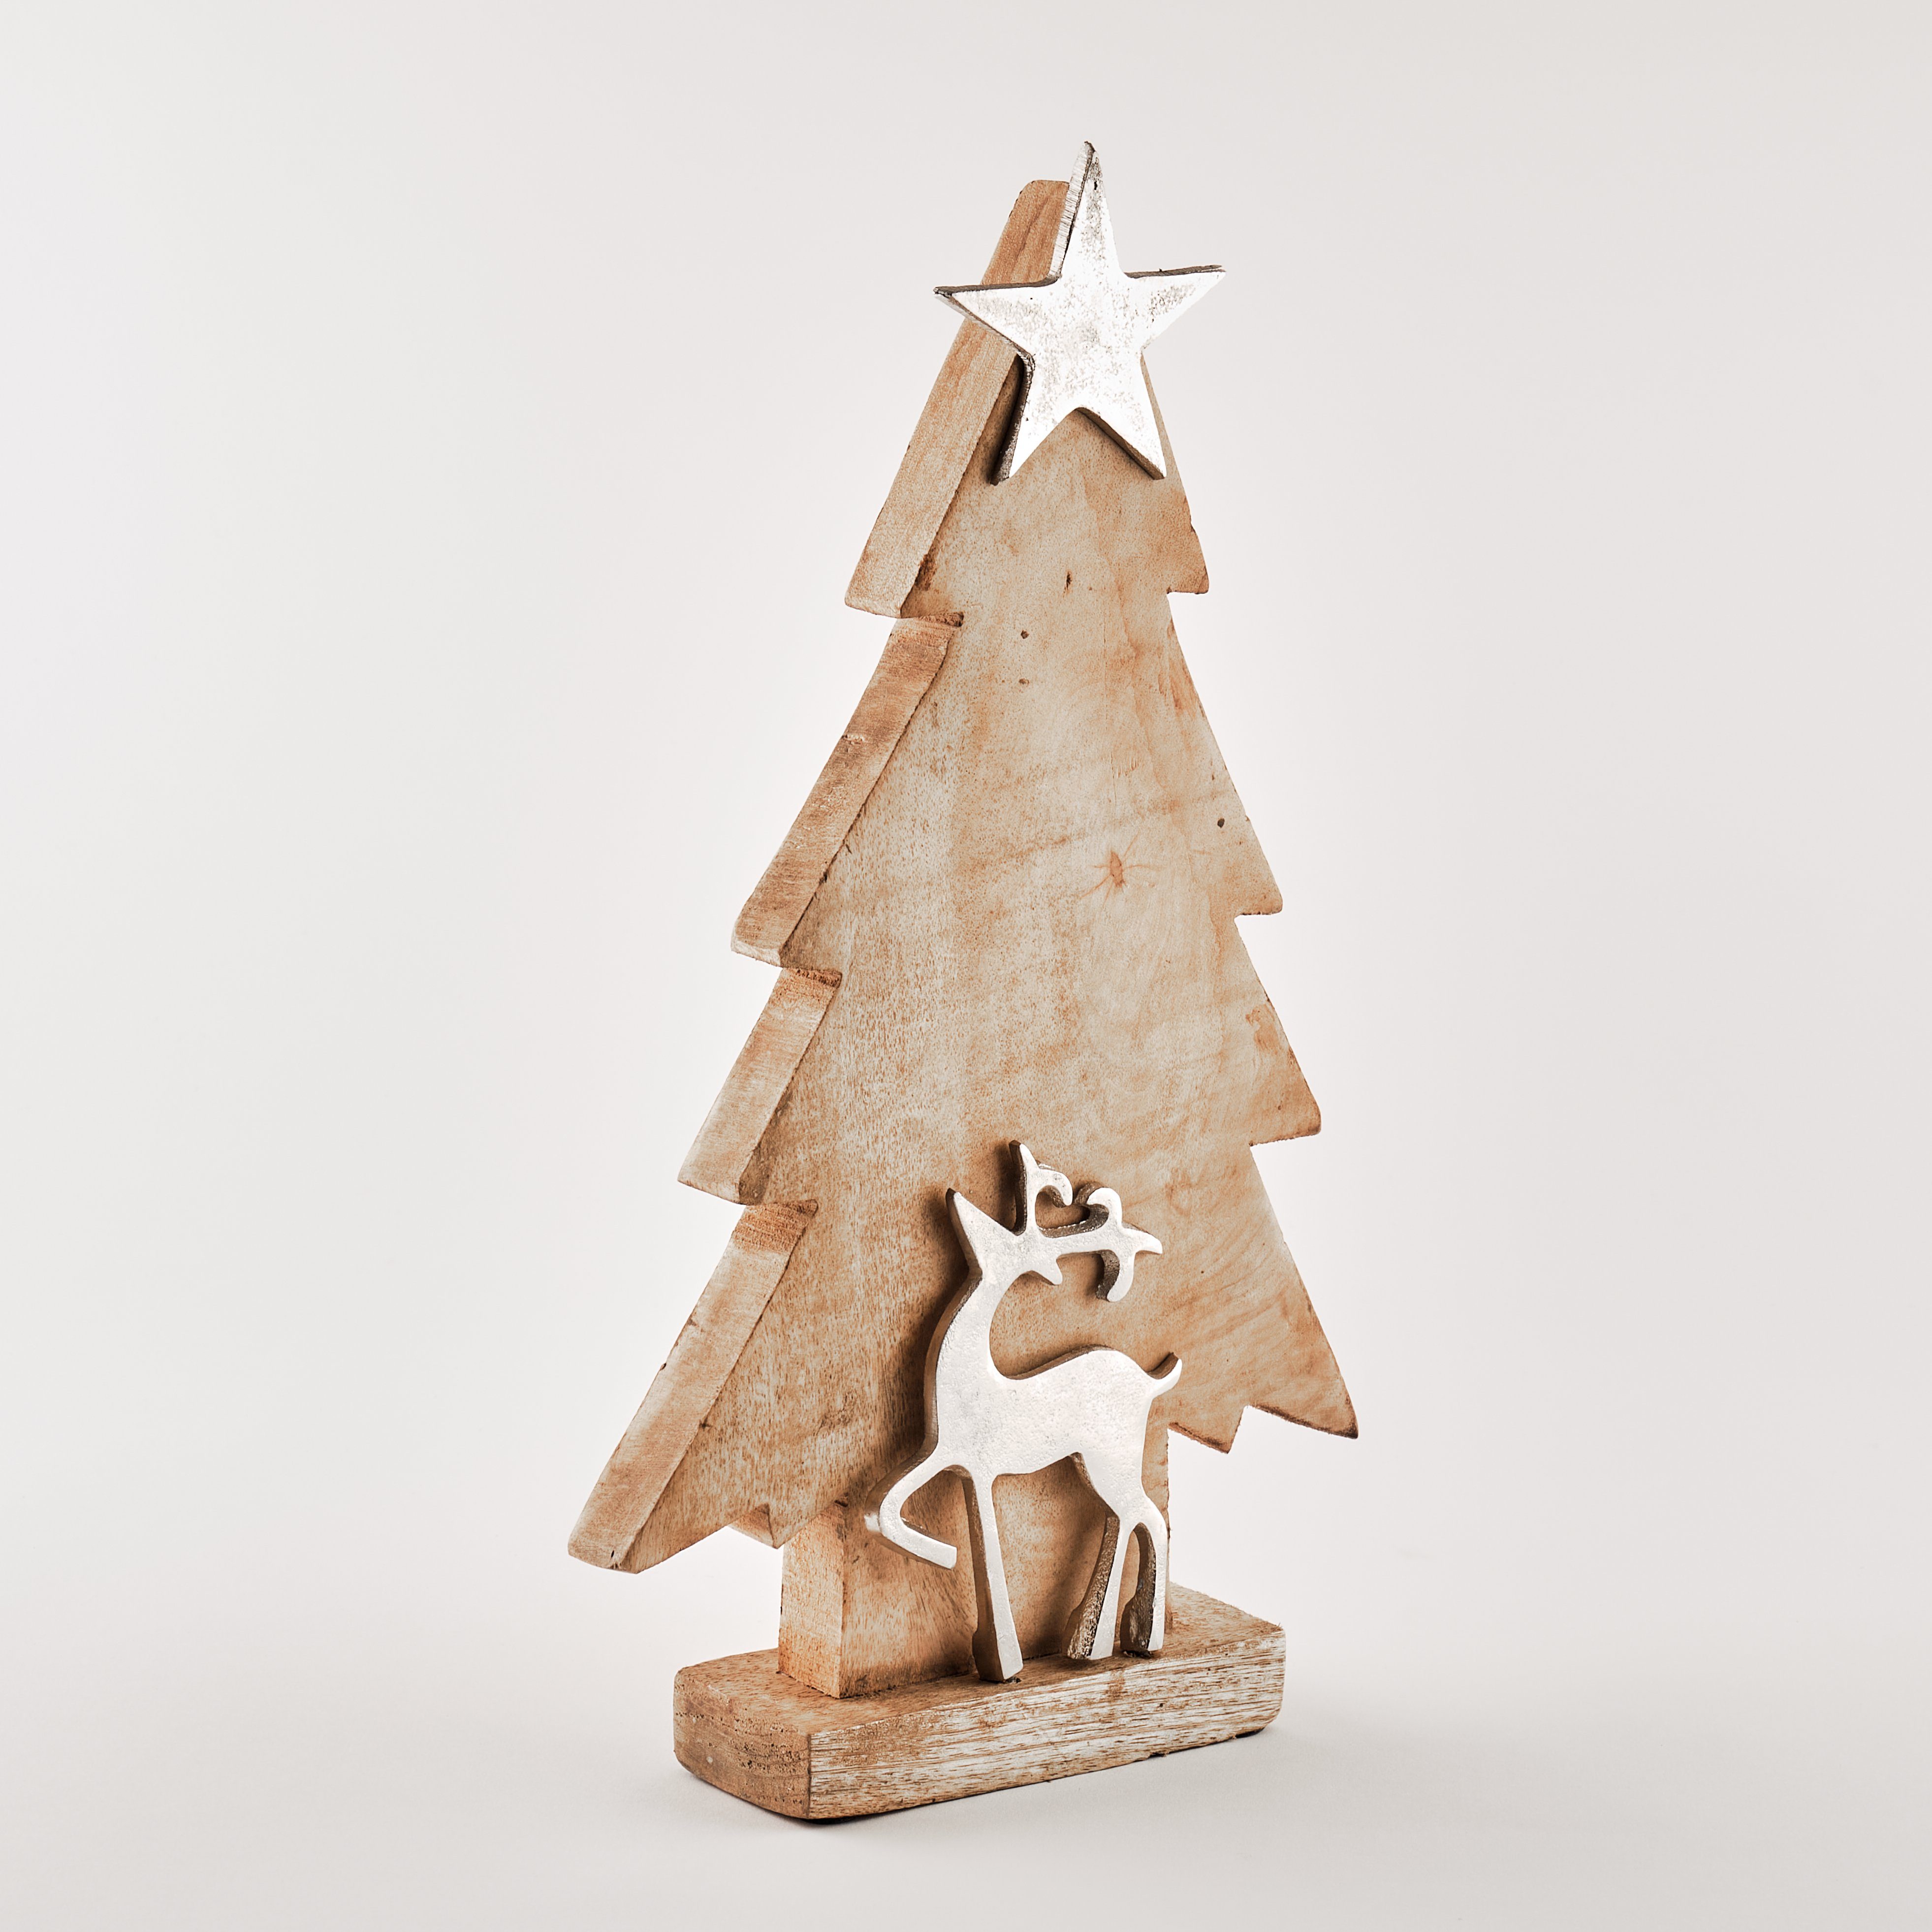 TOPCENT Weihnachtsfigur Tannenbaum aus Mangoholz mit Rentier, H 41 cm, aus Mangoholz